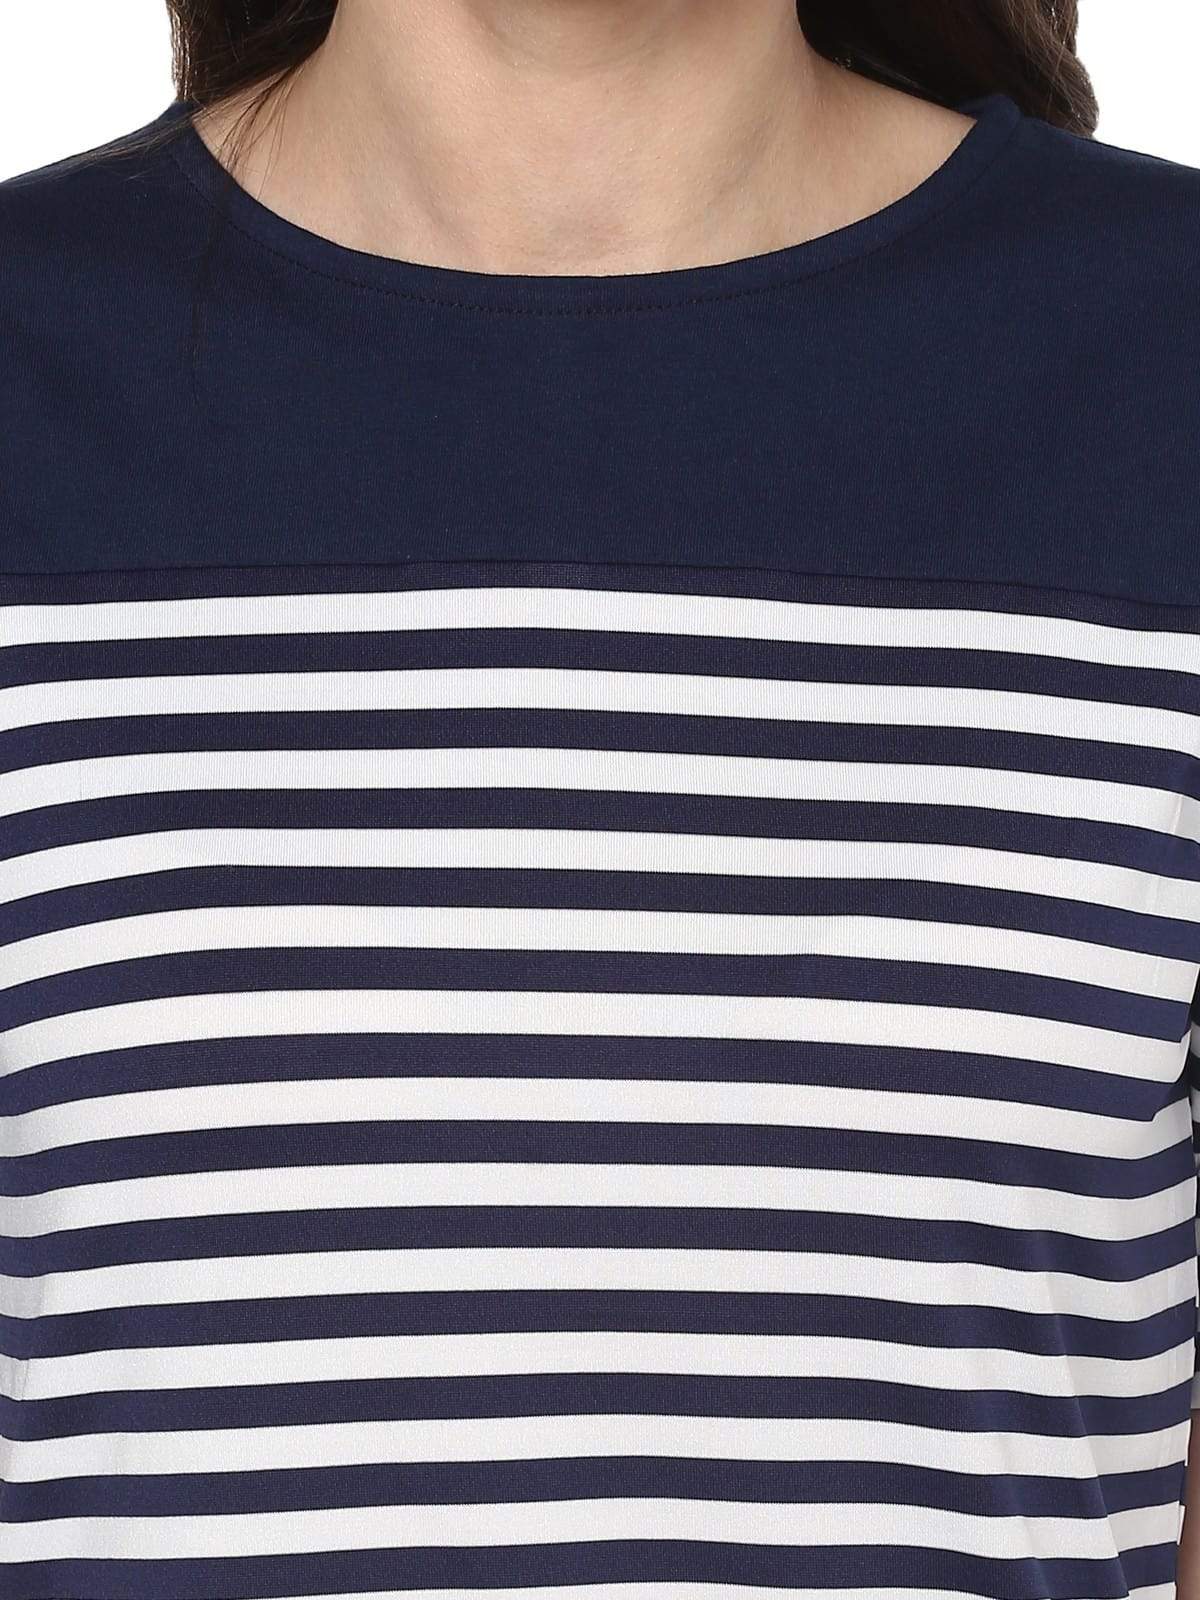 Women's Breton Stripe Back Detail Top - Pannkh